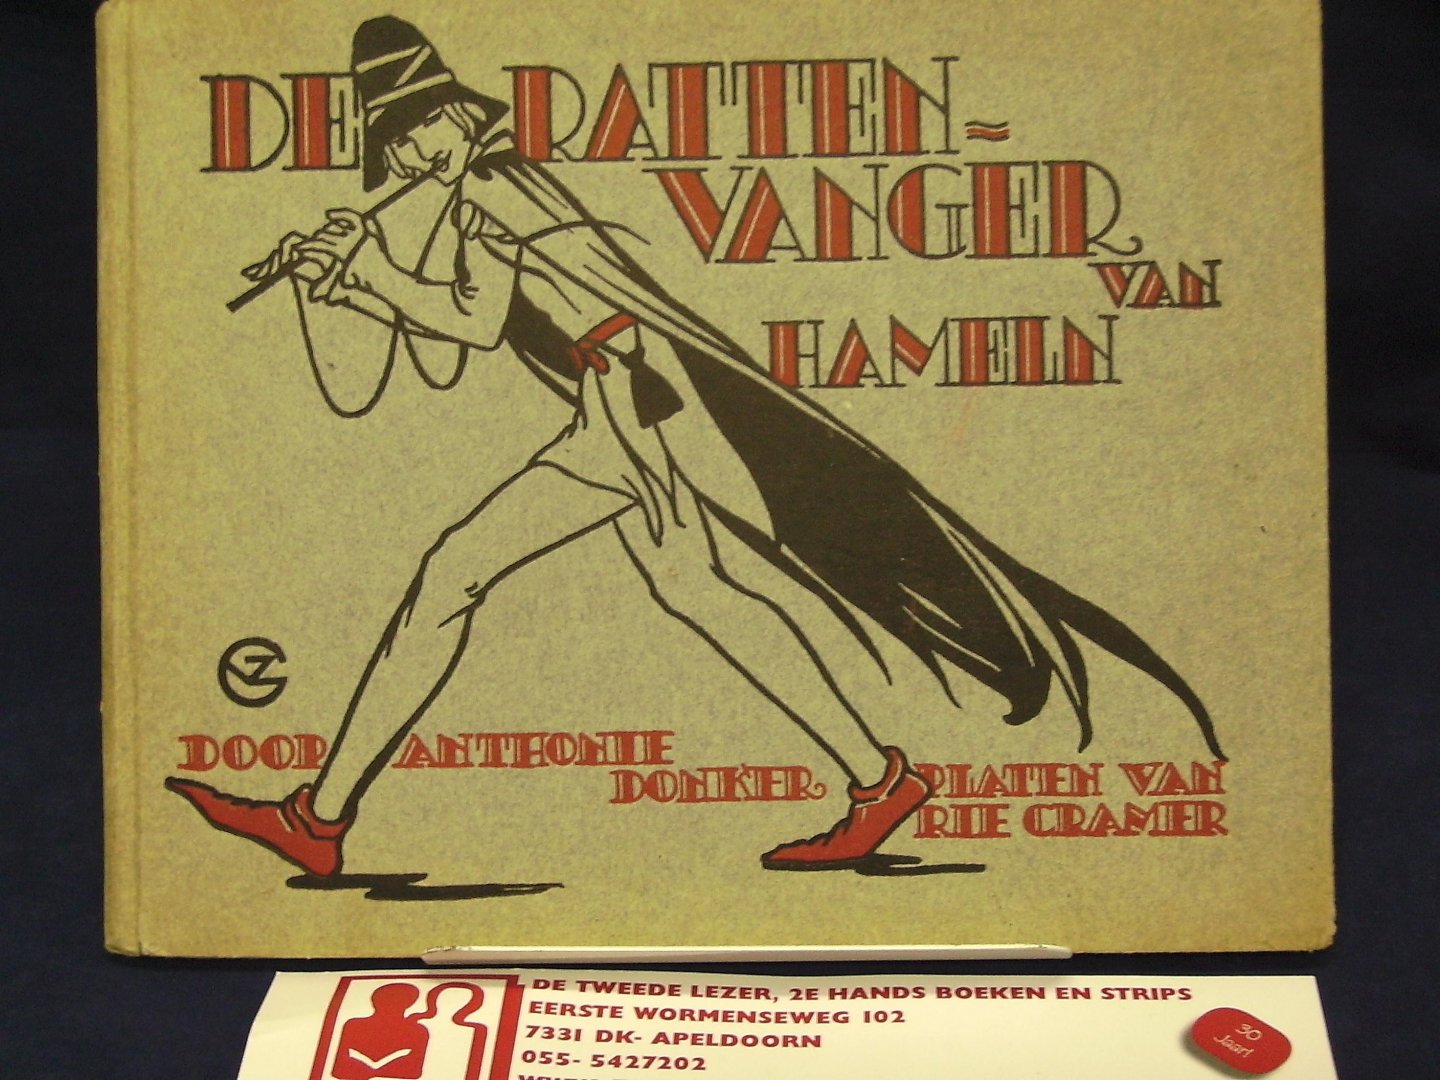 Donker, Anthonie met platen van Rie Cramer - De Rattenvanger van Hameln ; een kindervertelling op rijm uit het Engelsh door Anthonie Donker met platen van Rie Cramer